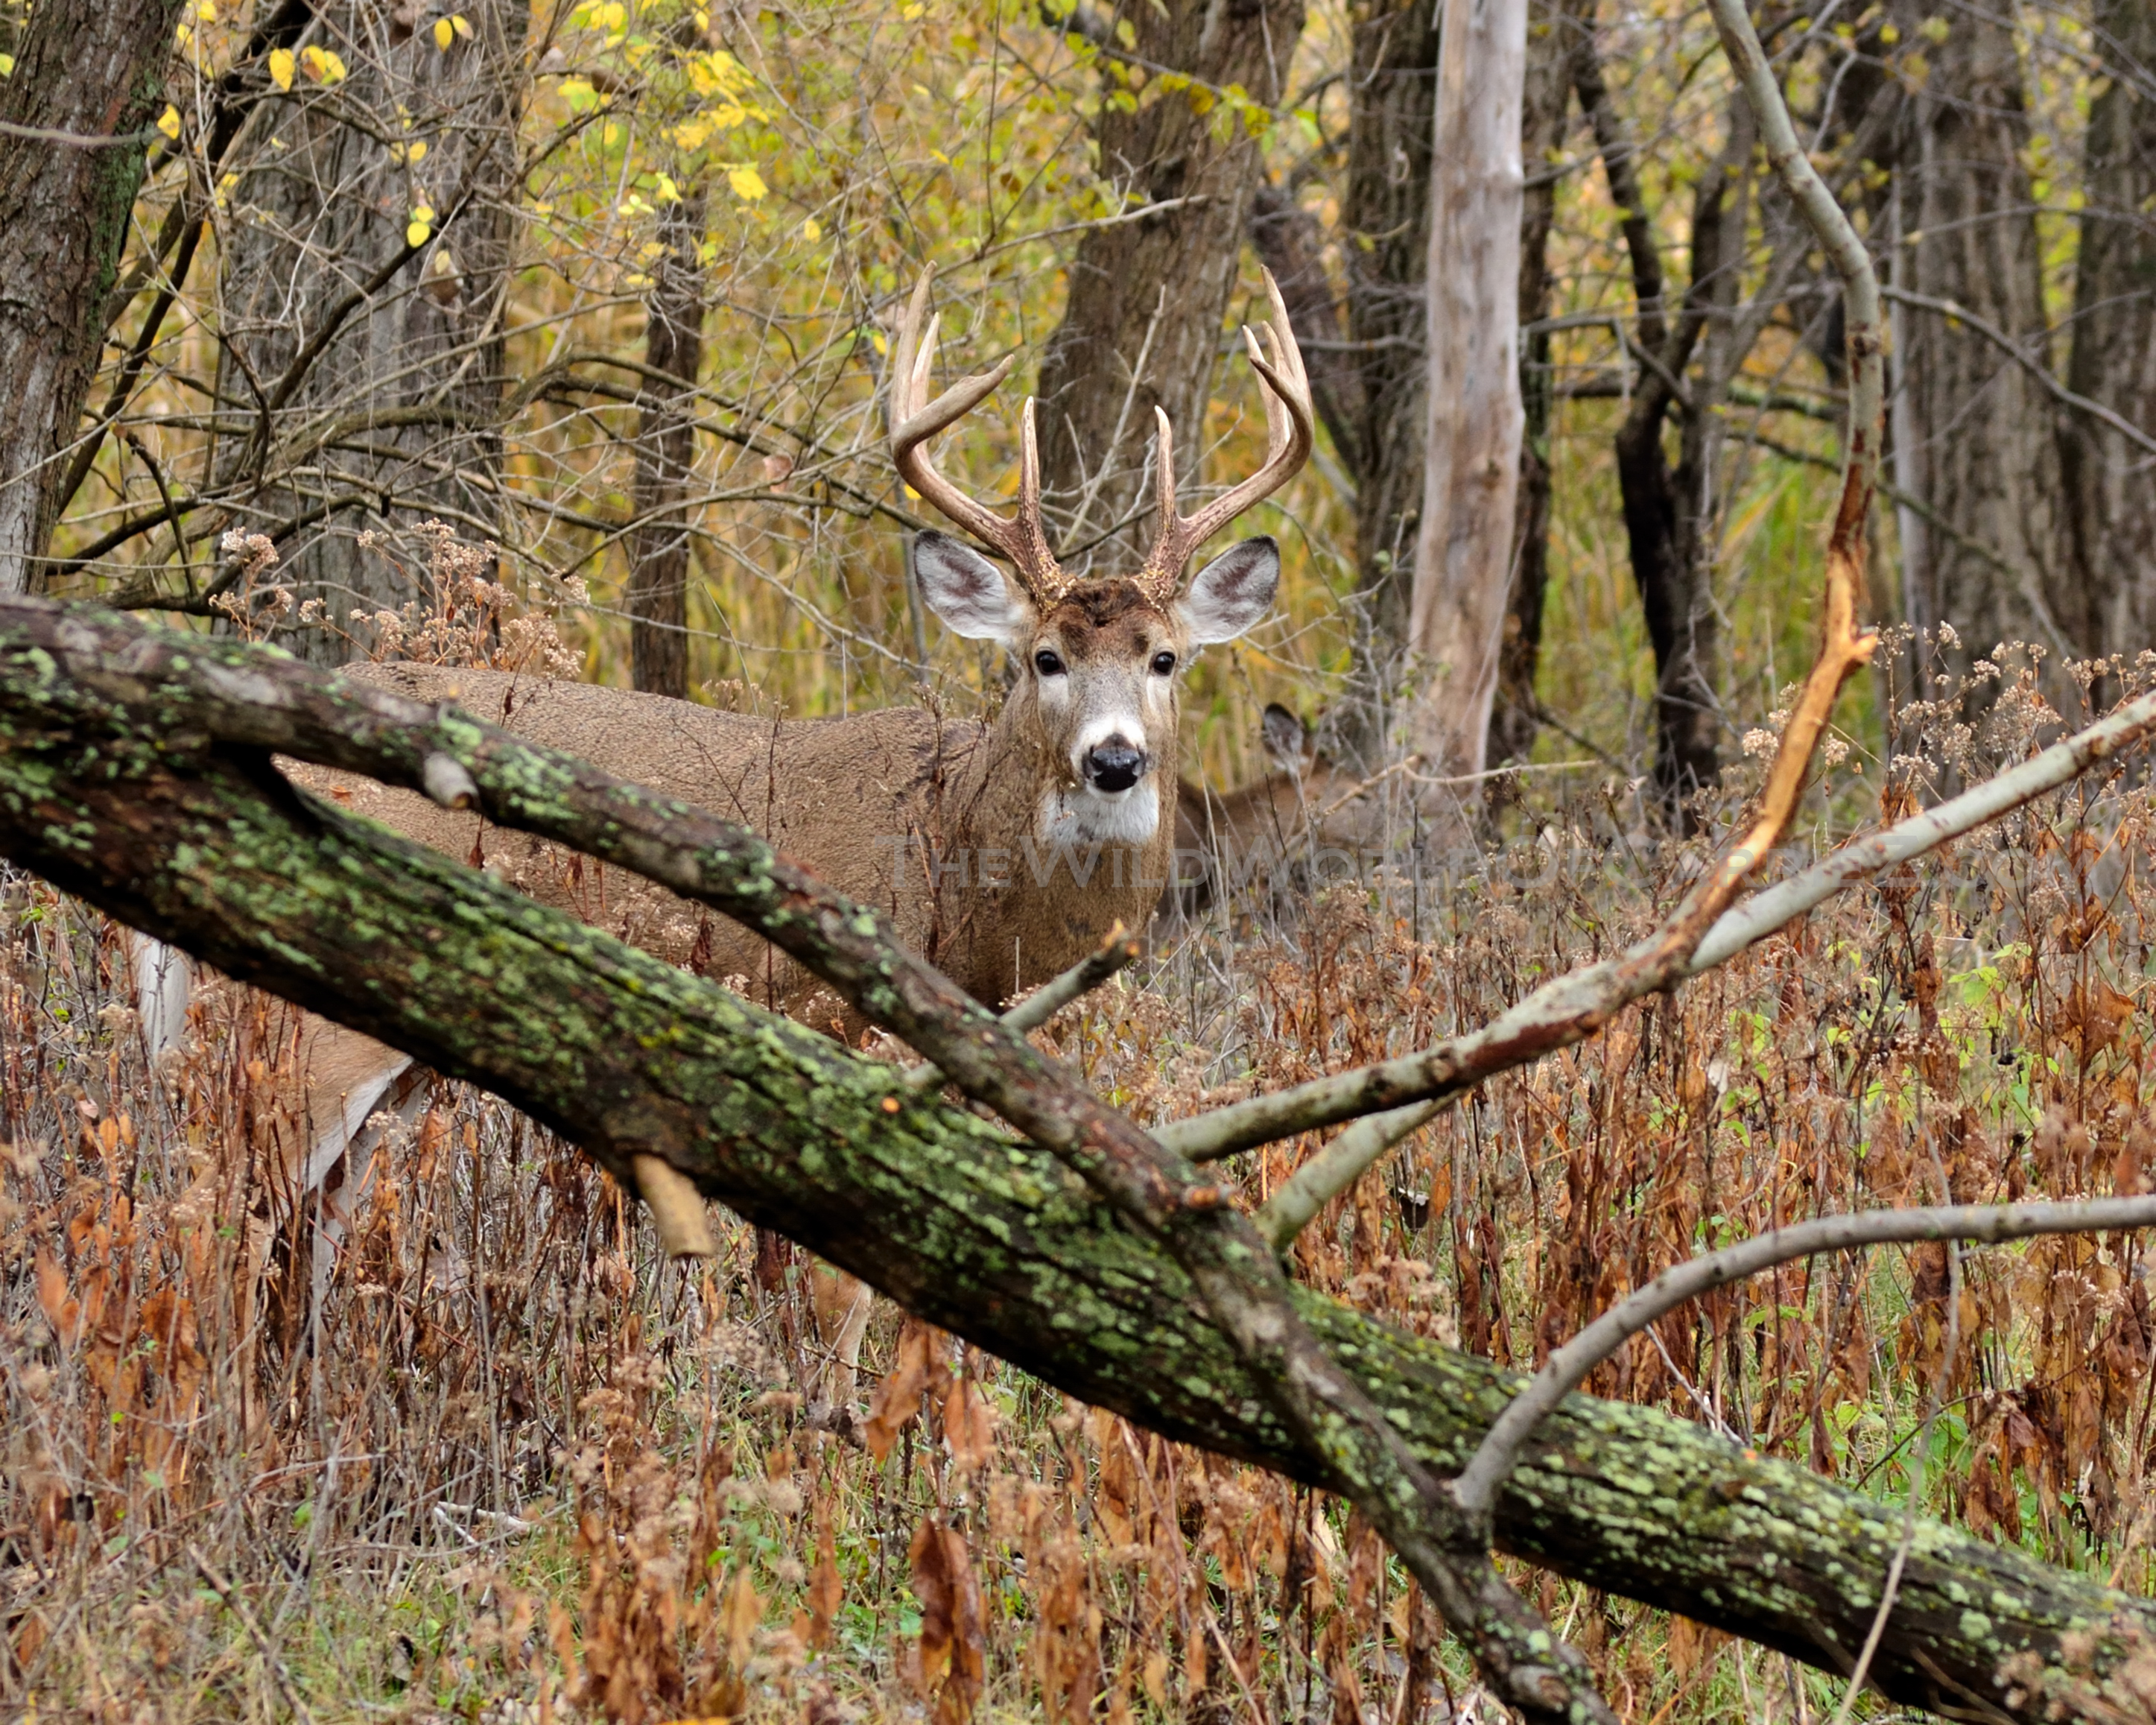 #HuntFishTravel 035 – Deer Species and Sub-Species